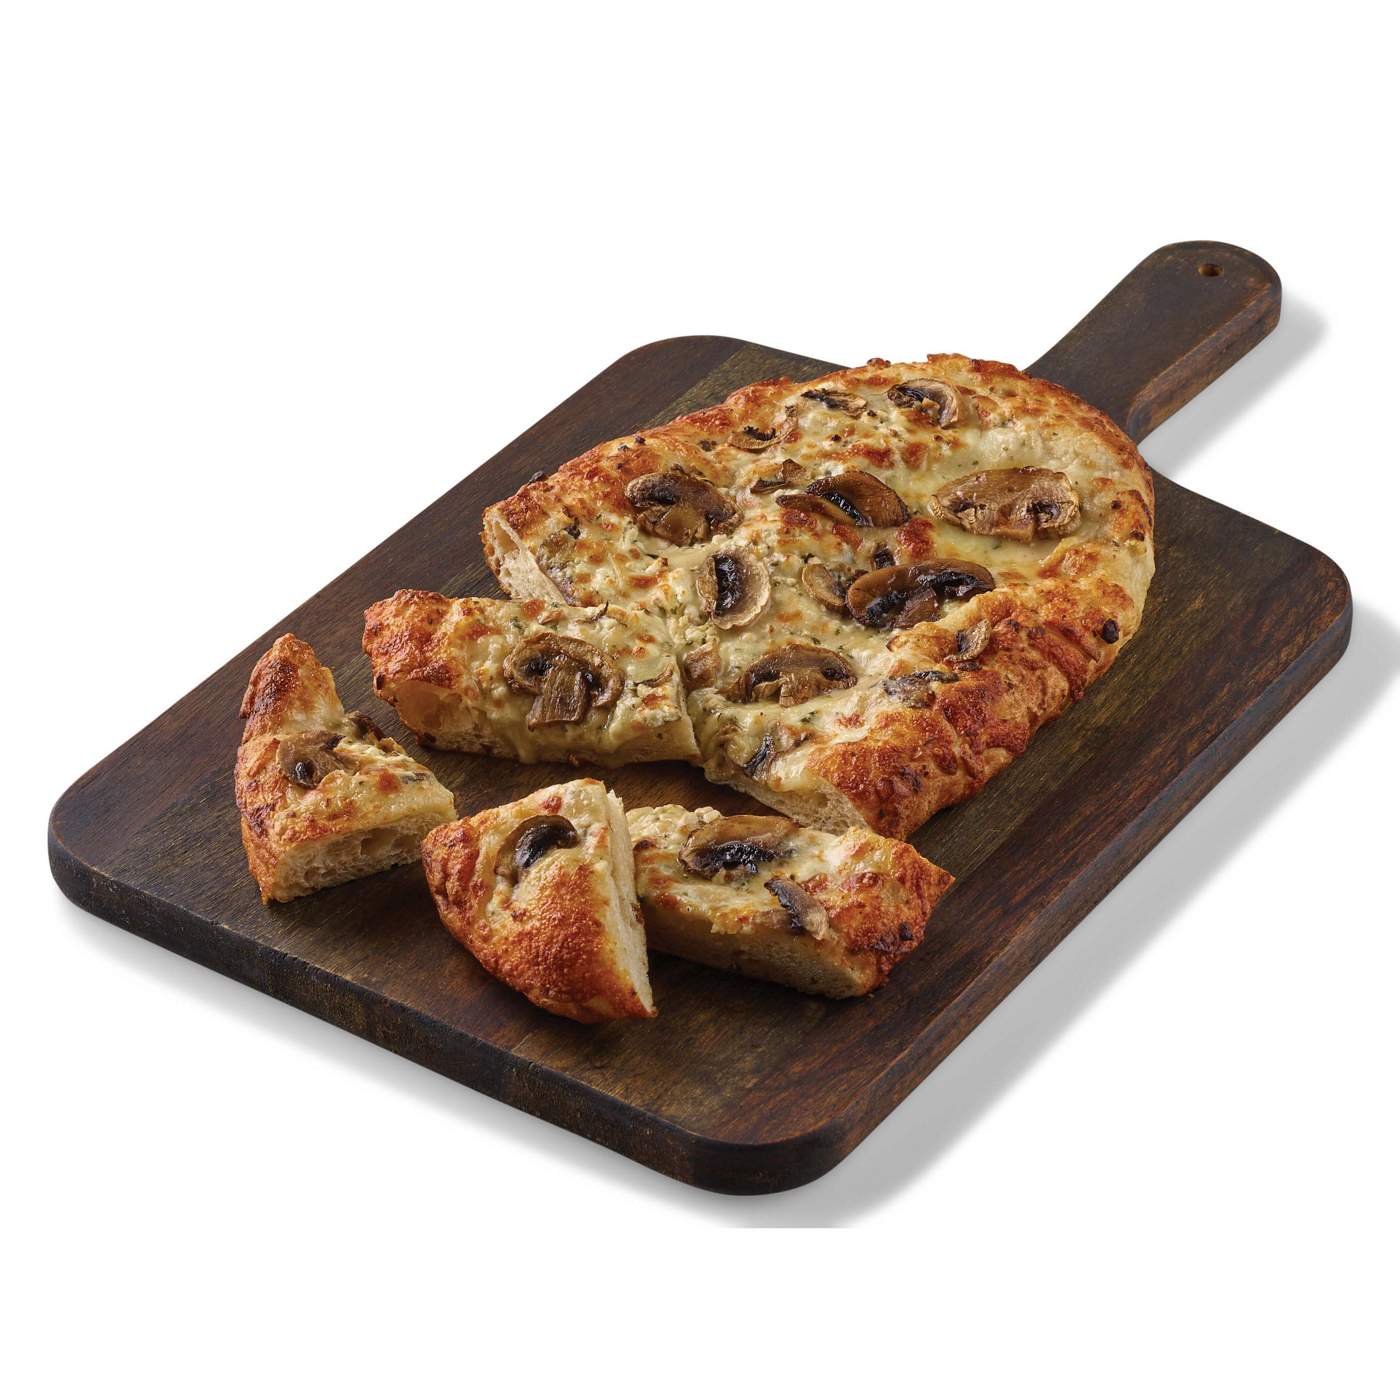 H-E-B Deli Artisan Focaccia Pizza - Mushroom, Mozzarella & Goat Cheese; image 2 of 3